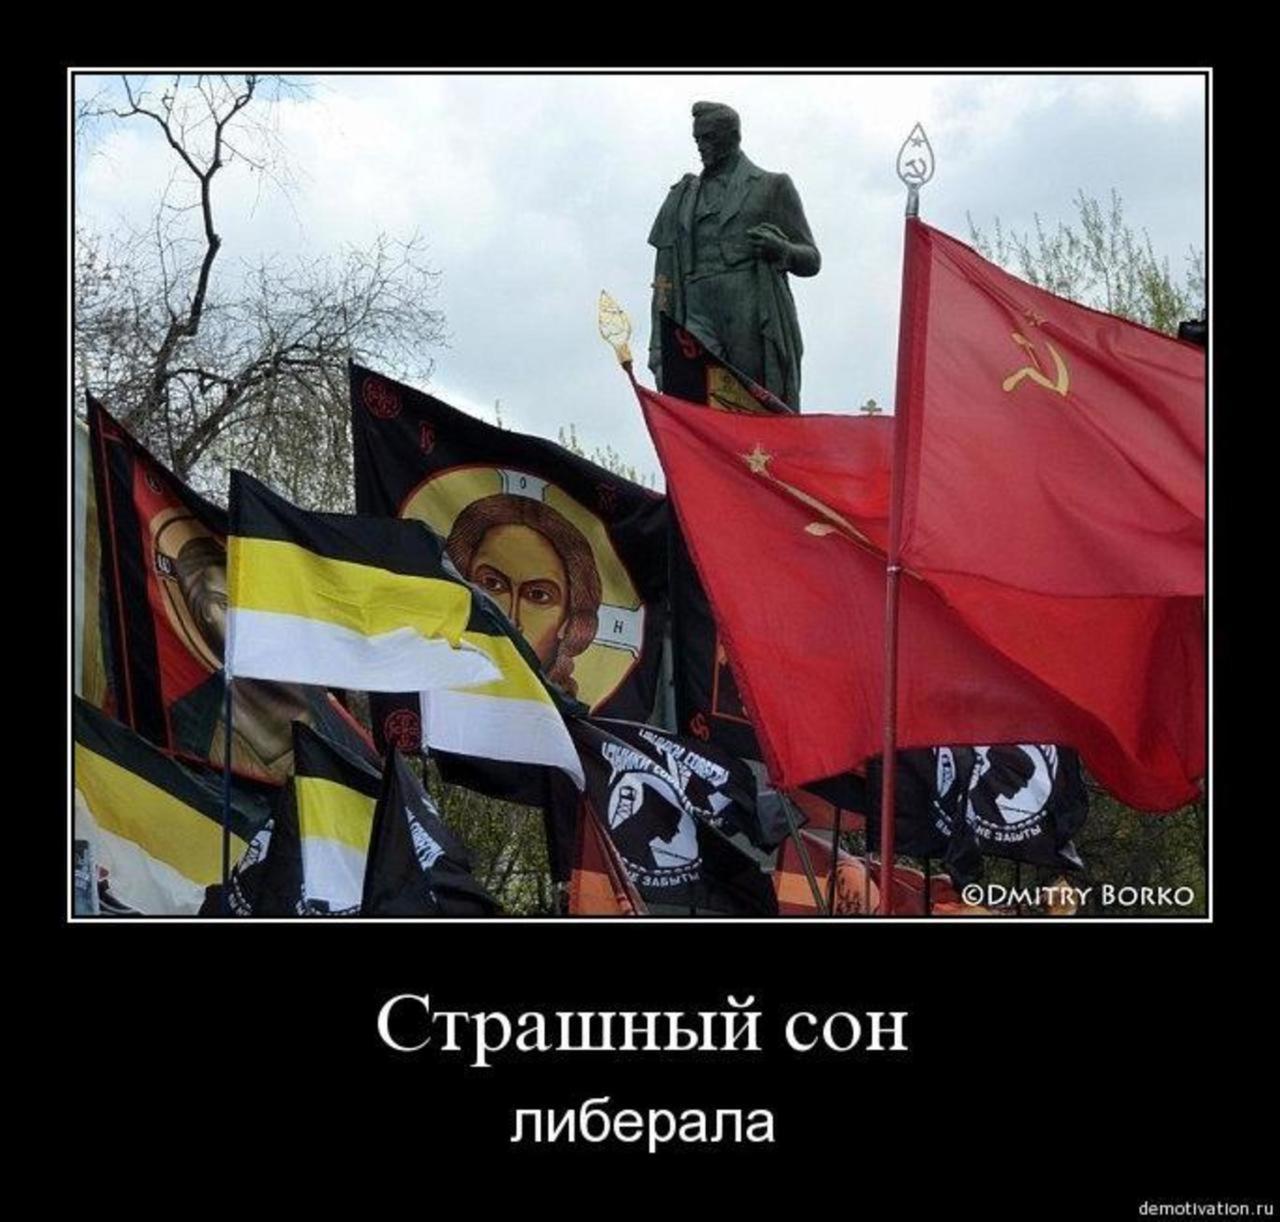 Почему нельзя флаг. Националисты и коммунисты. Русские коммунисты националисты. Христианский национализм. Российские националисты против коммунистов.